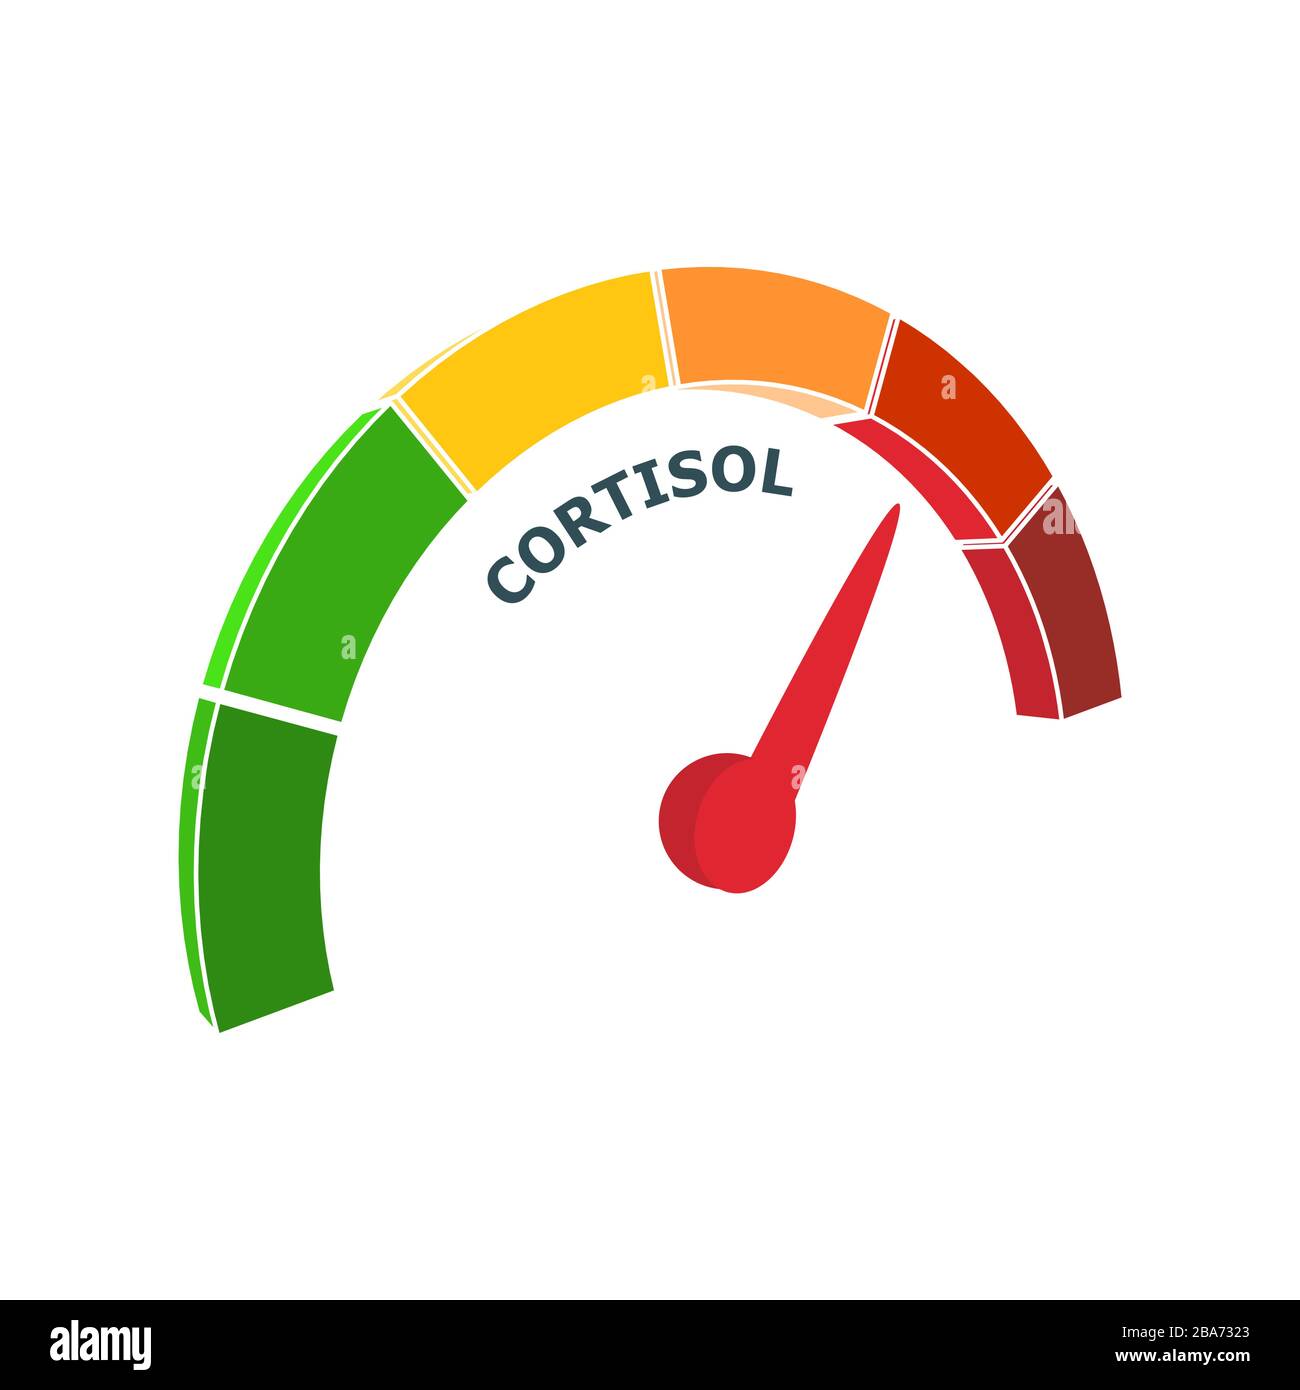 Test de cortisol, image conceptuelle Photo Stock - Alamy